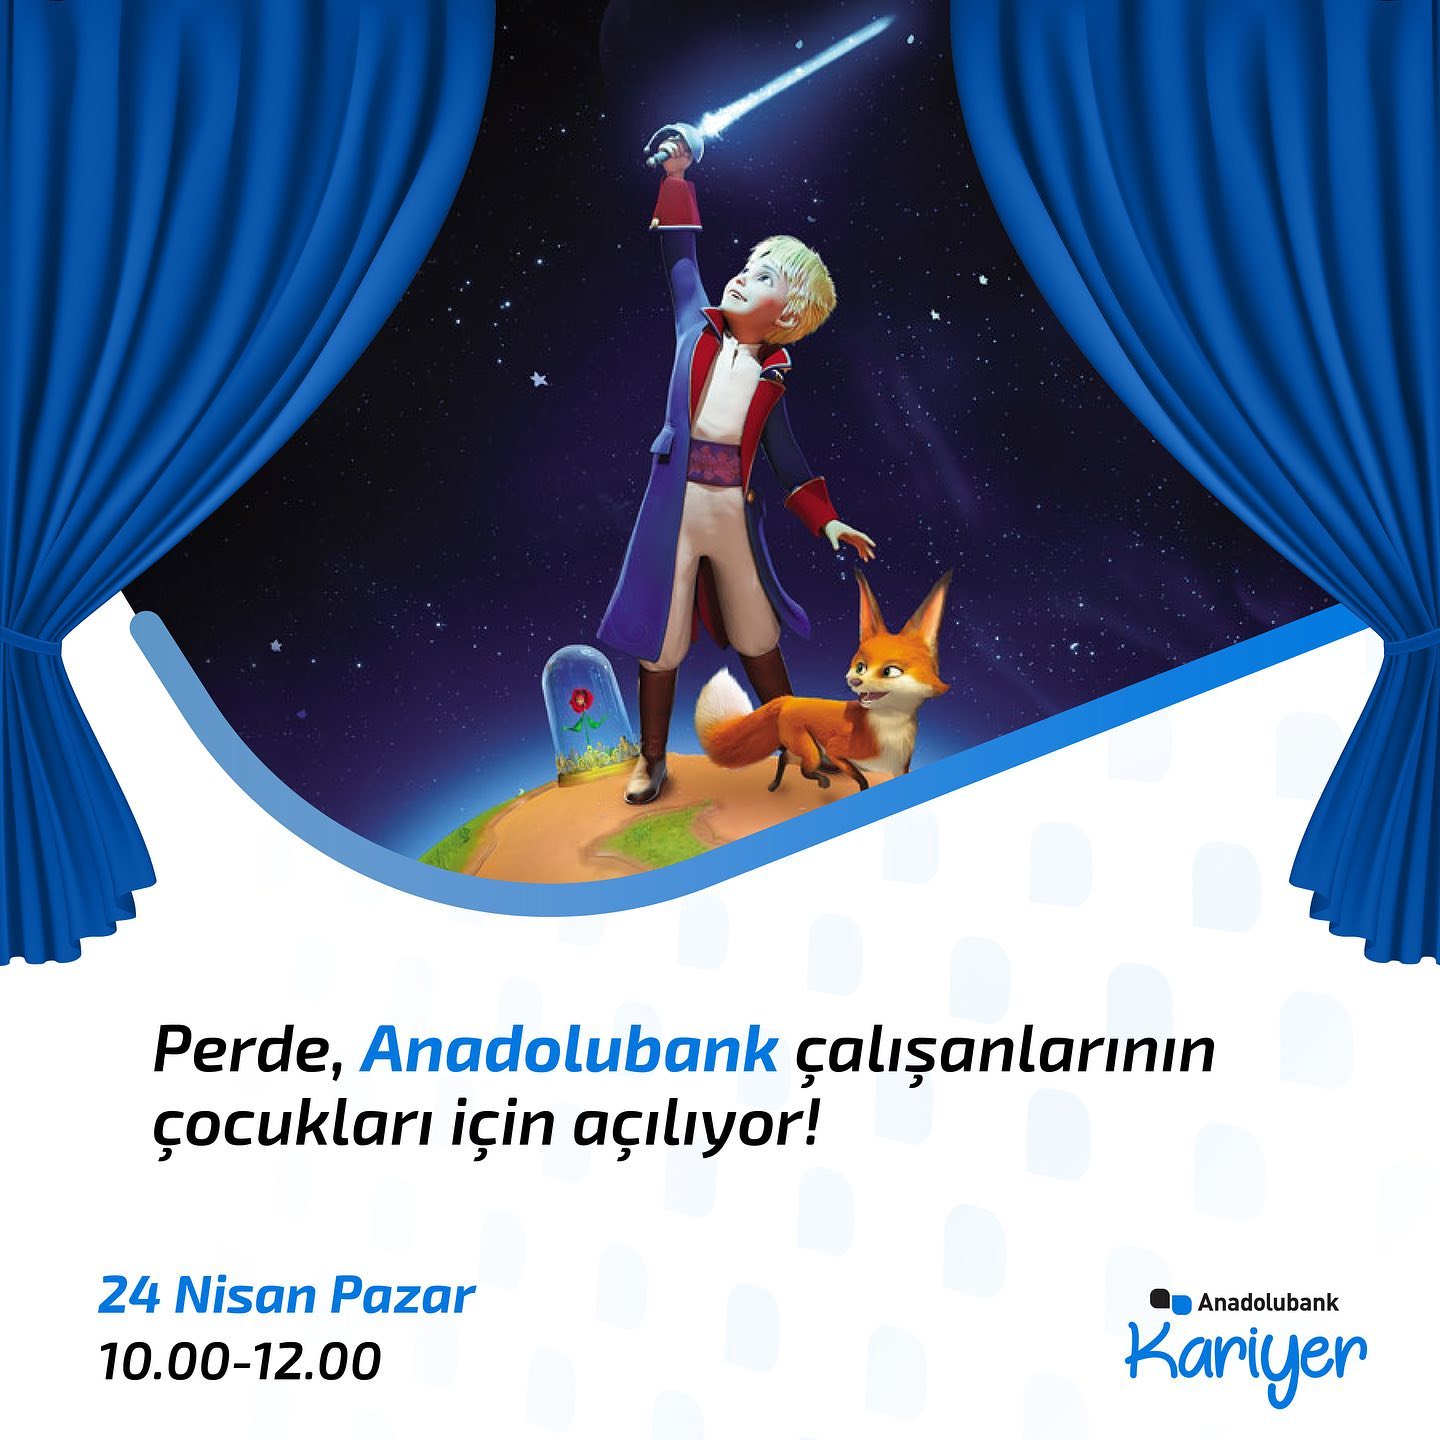 Perde, Anadolubank çalışanlarının çocukları için açılıyor!